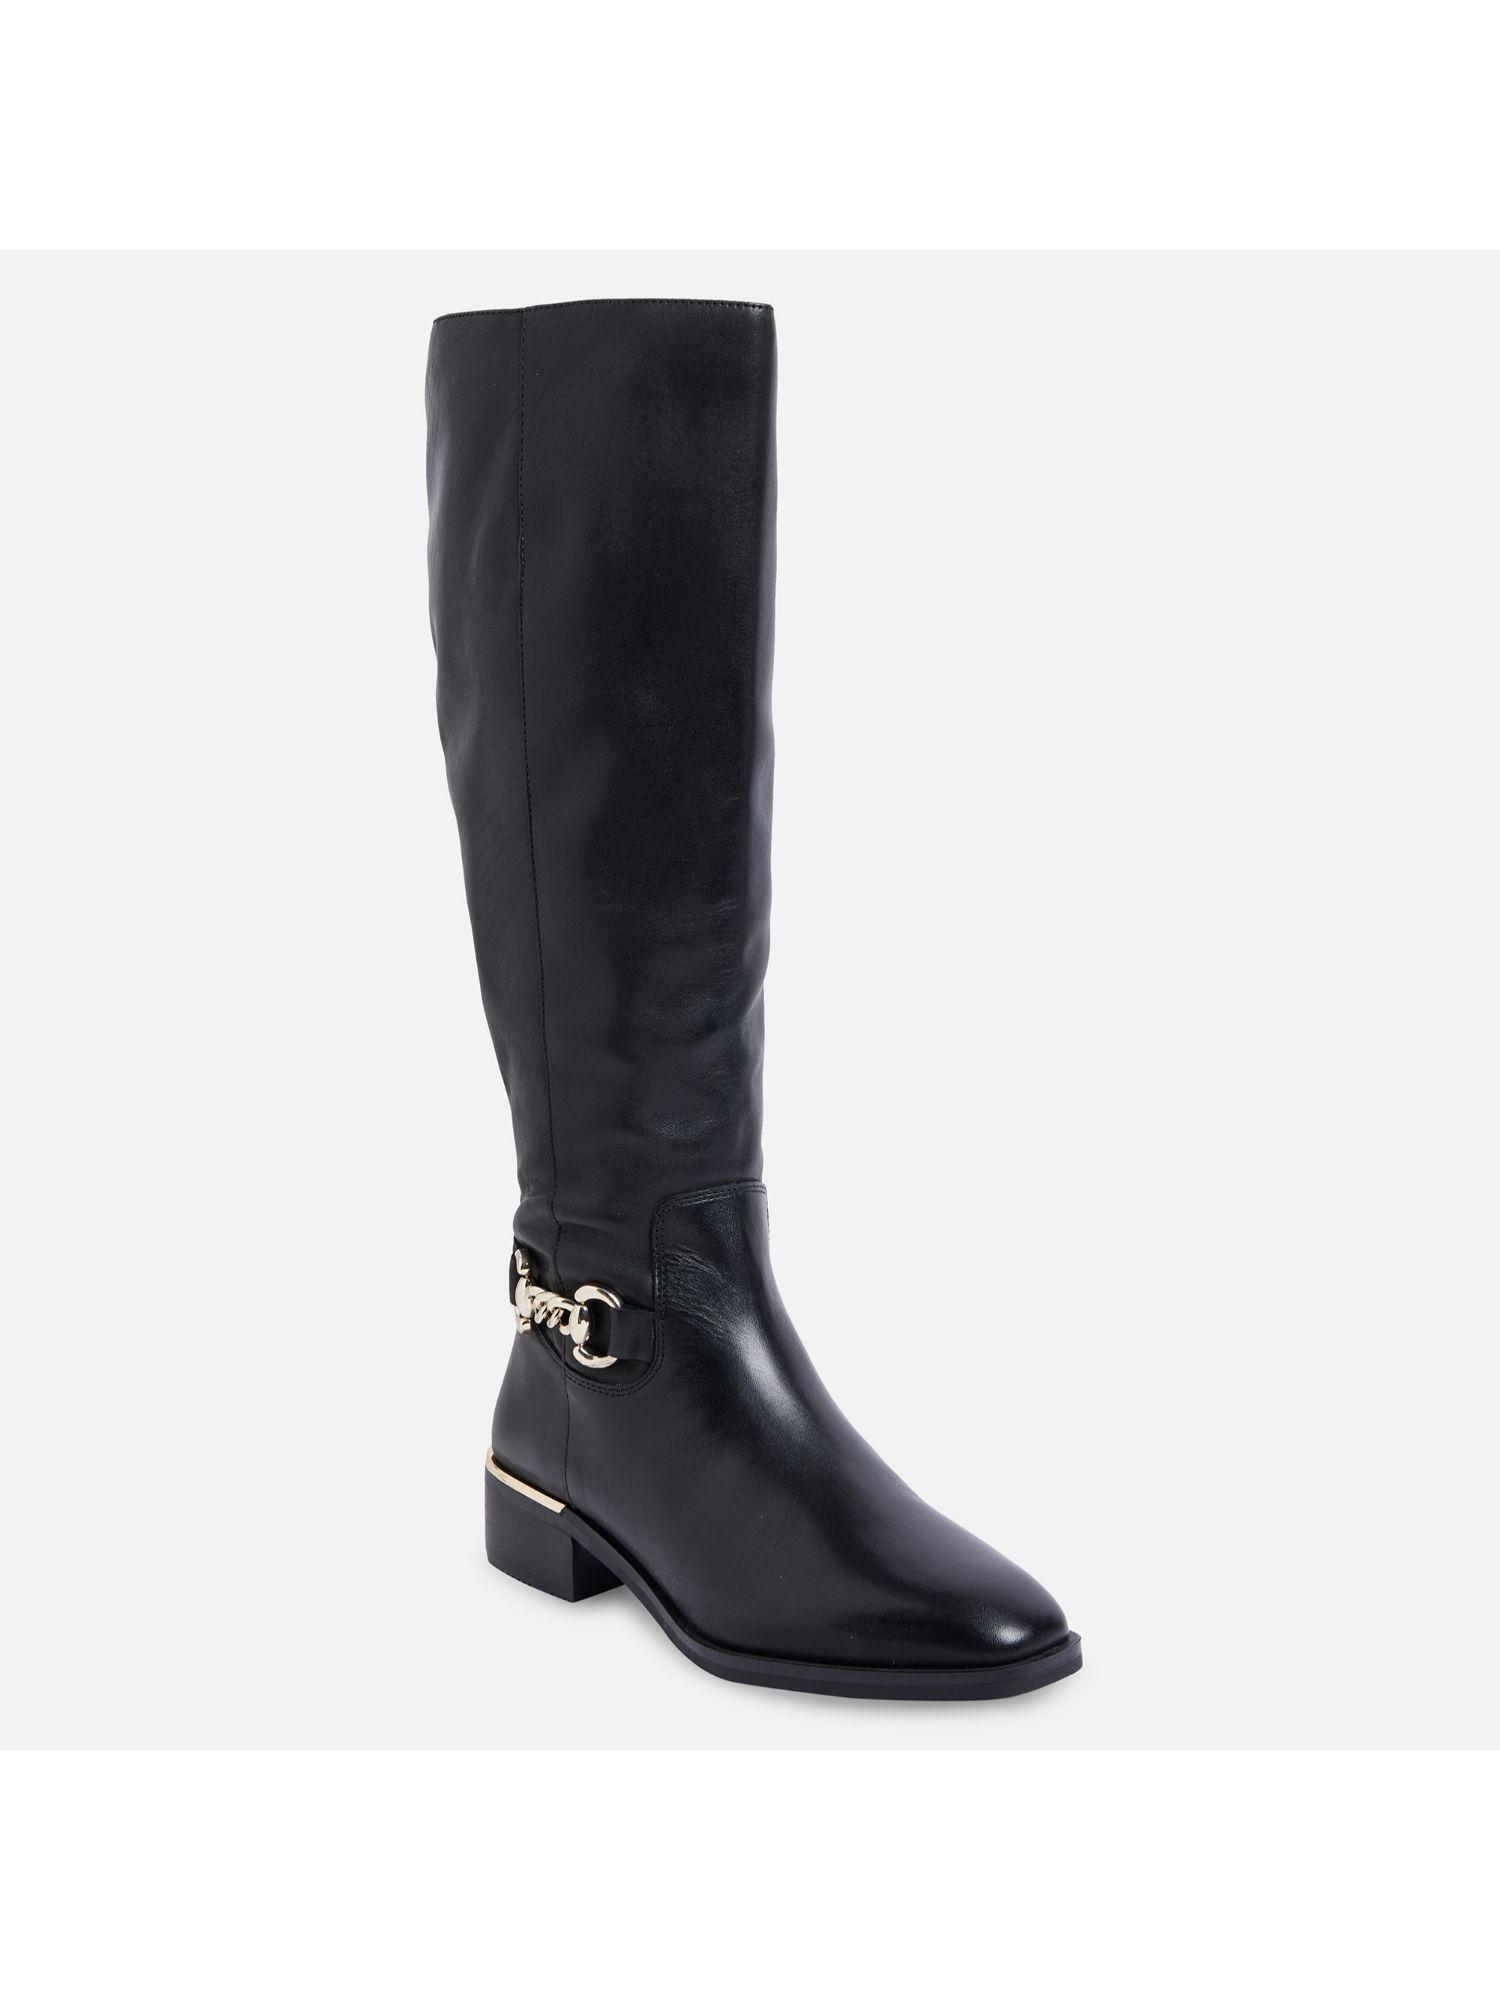 fraenna leather black solid knee length boots